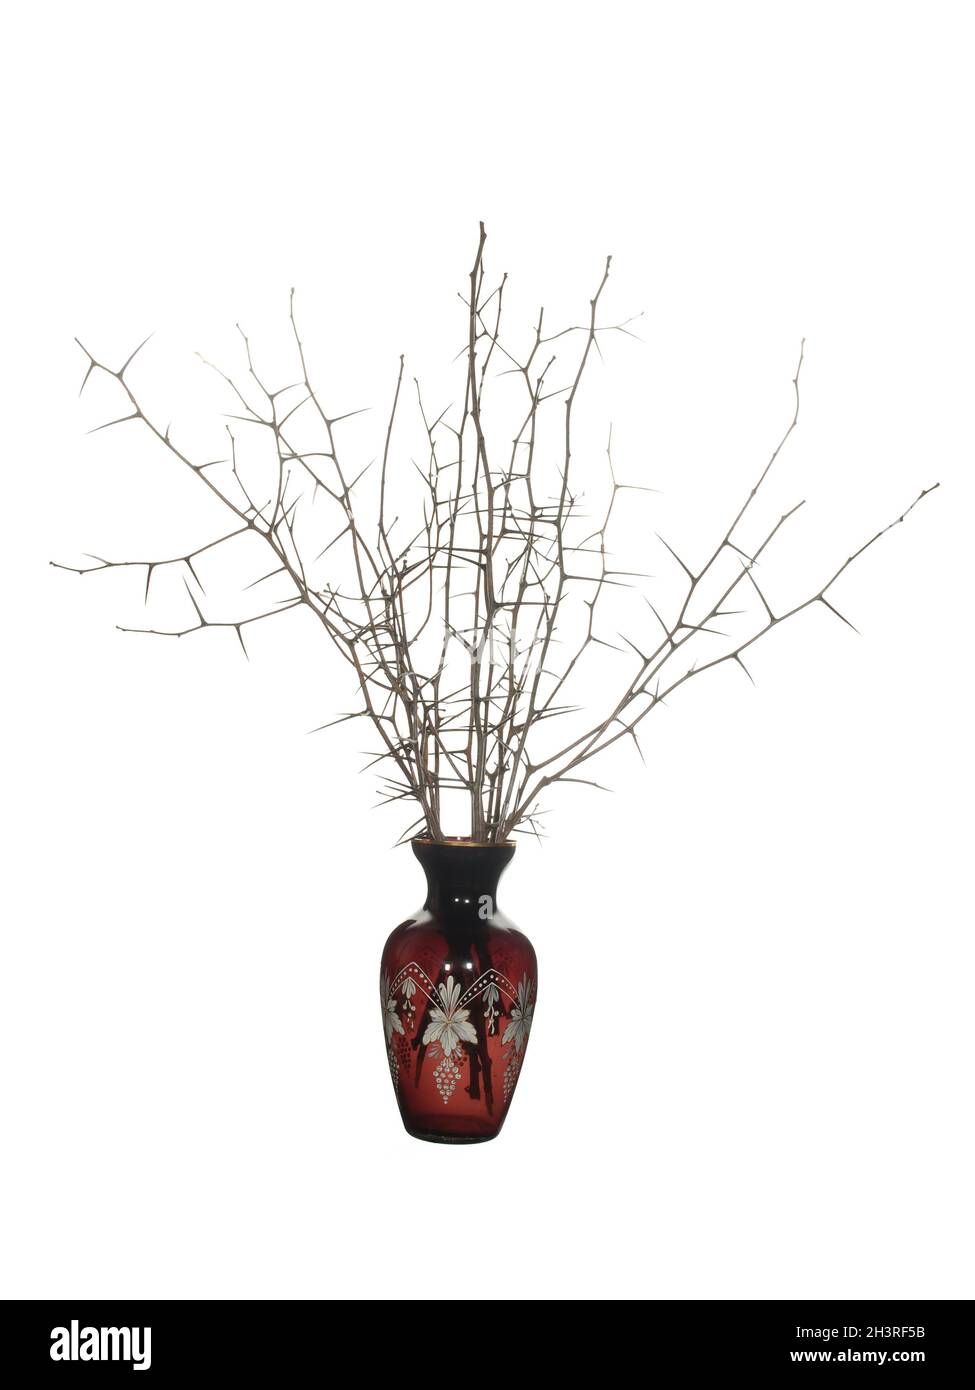 Trockene Schlehdornzweige mit langen Nadeln und ohne Blätter in einer roten Glasvase klassischer Form, isoliert auf weißem Grund. Stockfoto